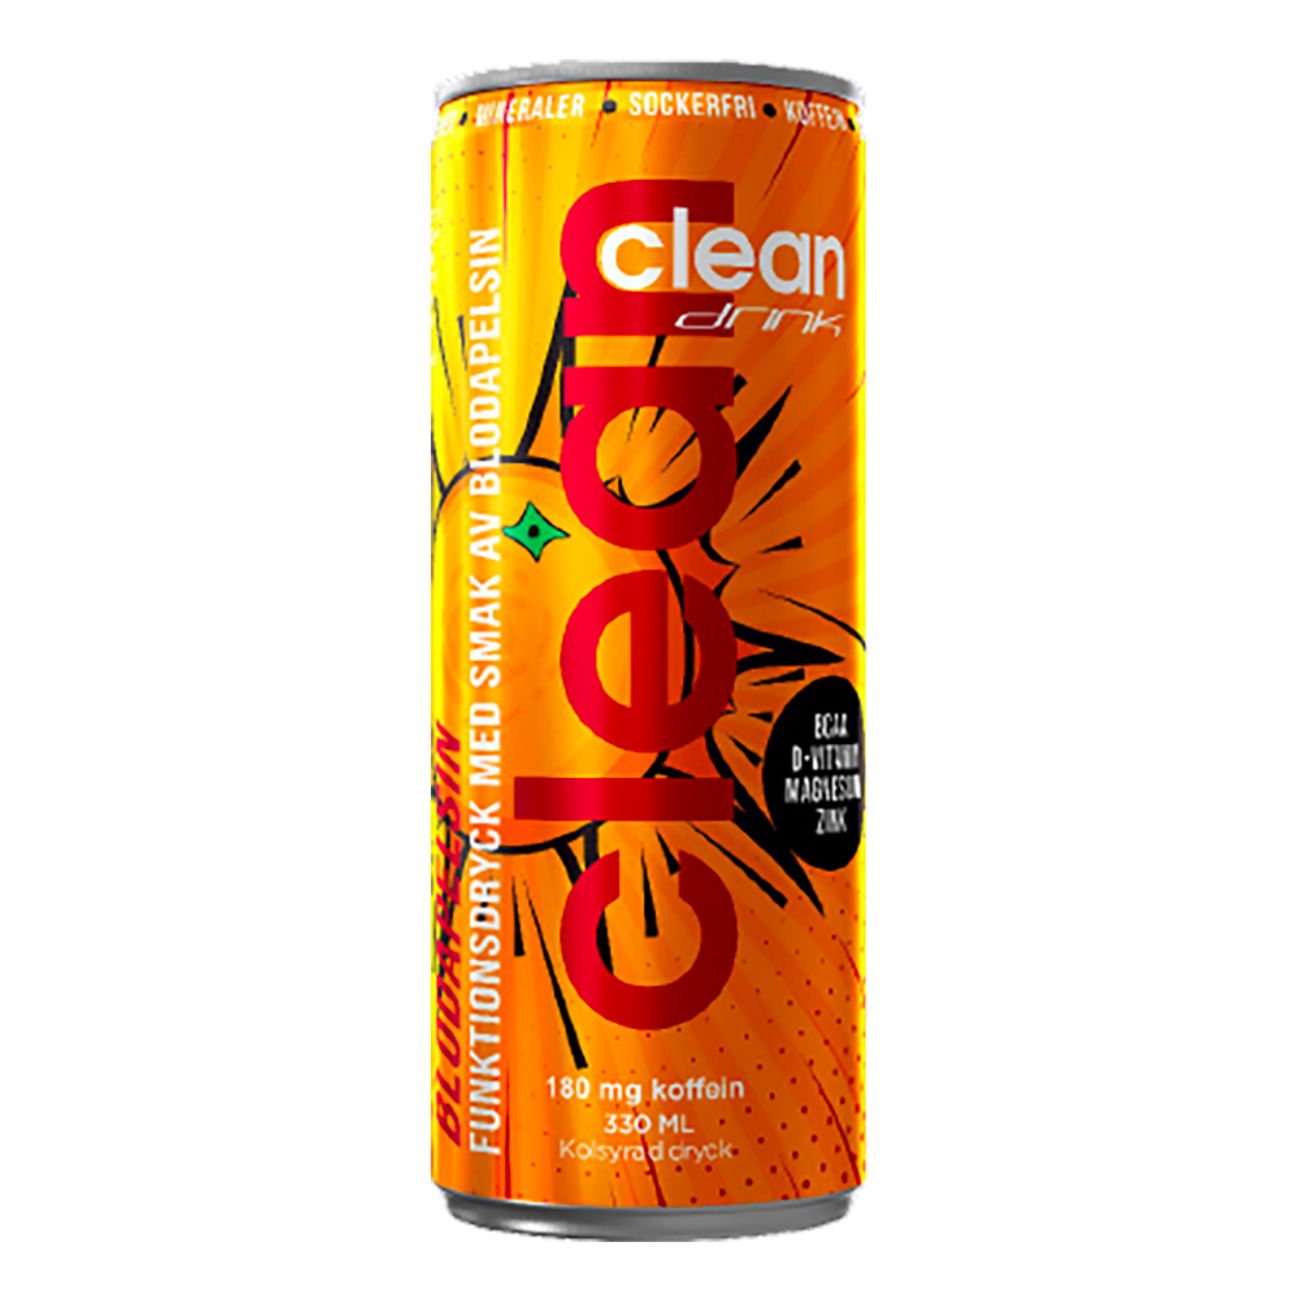 clean-drink-blodapelsin-82500-1